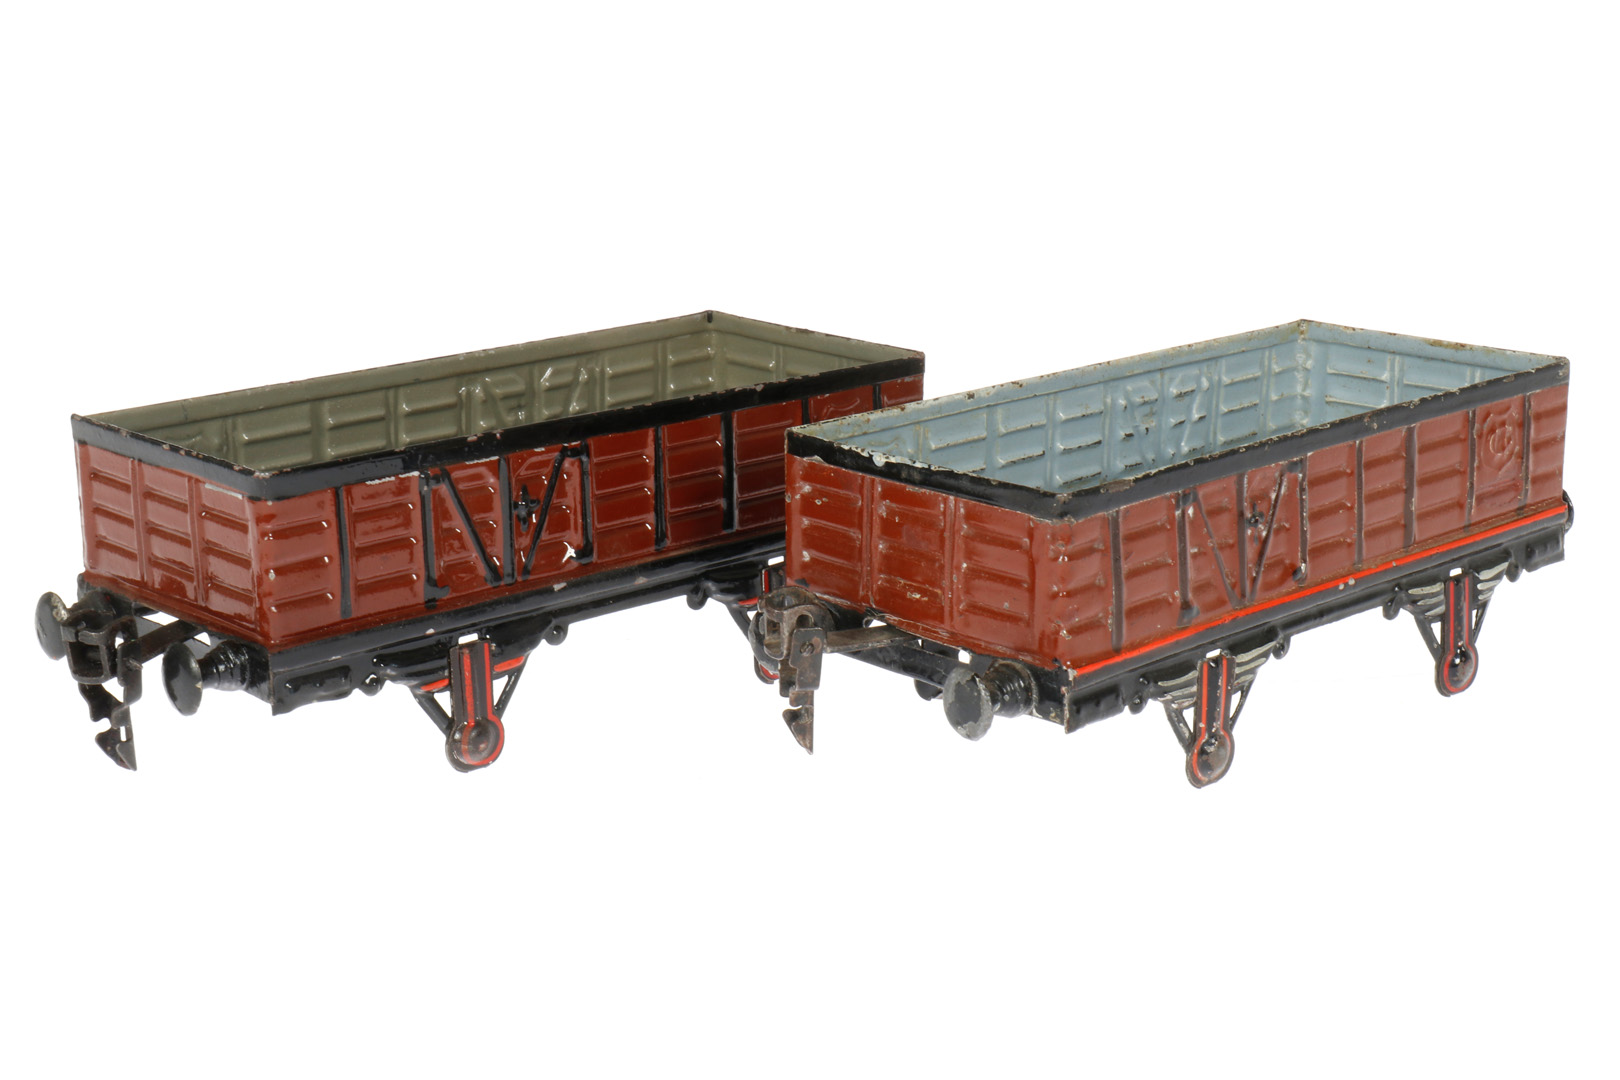 2 Märklin offene Güterwagen 1819, uralt, S 1, handlackiert, ohne Radsätze, leichte Alterungs- und